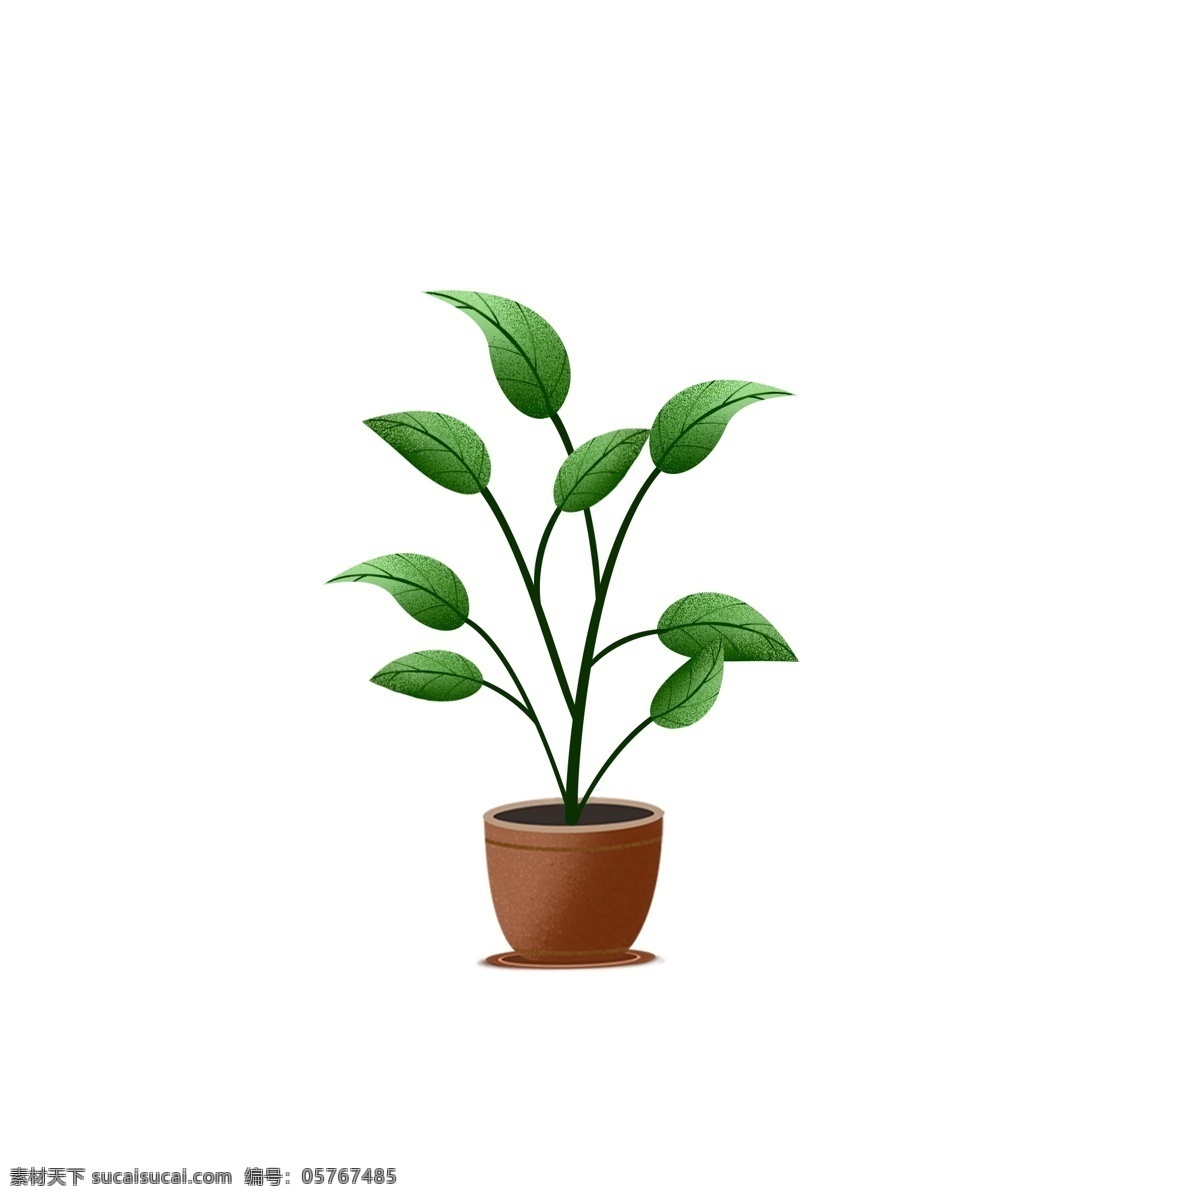 绿色 盆栽 卡通 小清 新设 计 手绘 插画 小清新 植物 树木 花盆